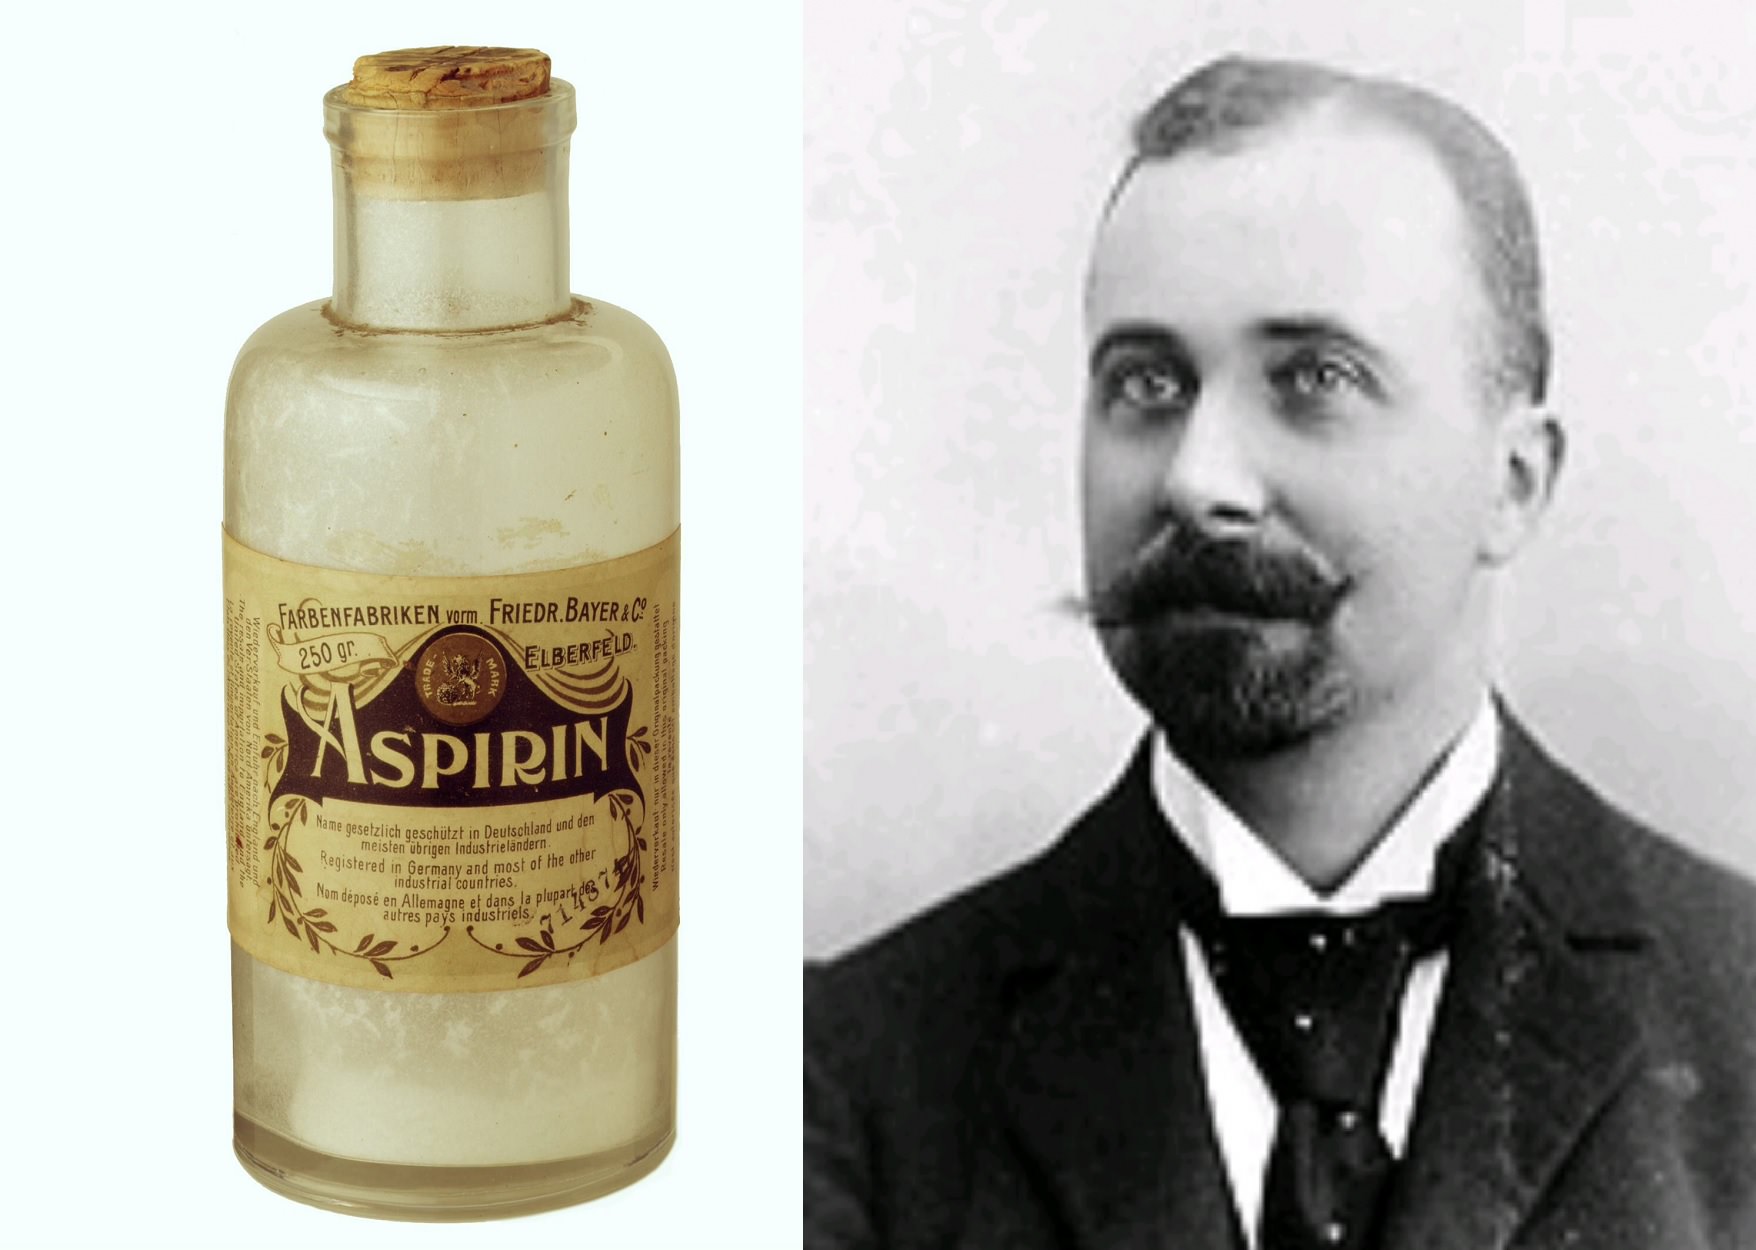 Aspirin (1897) by Felix Hoffmann